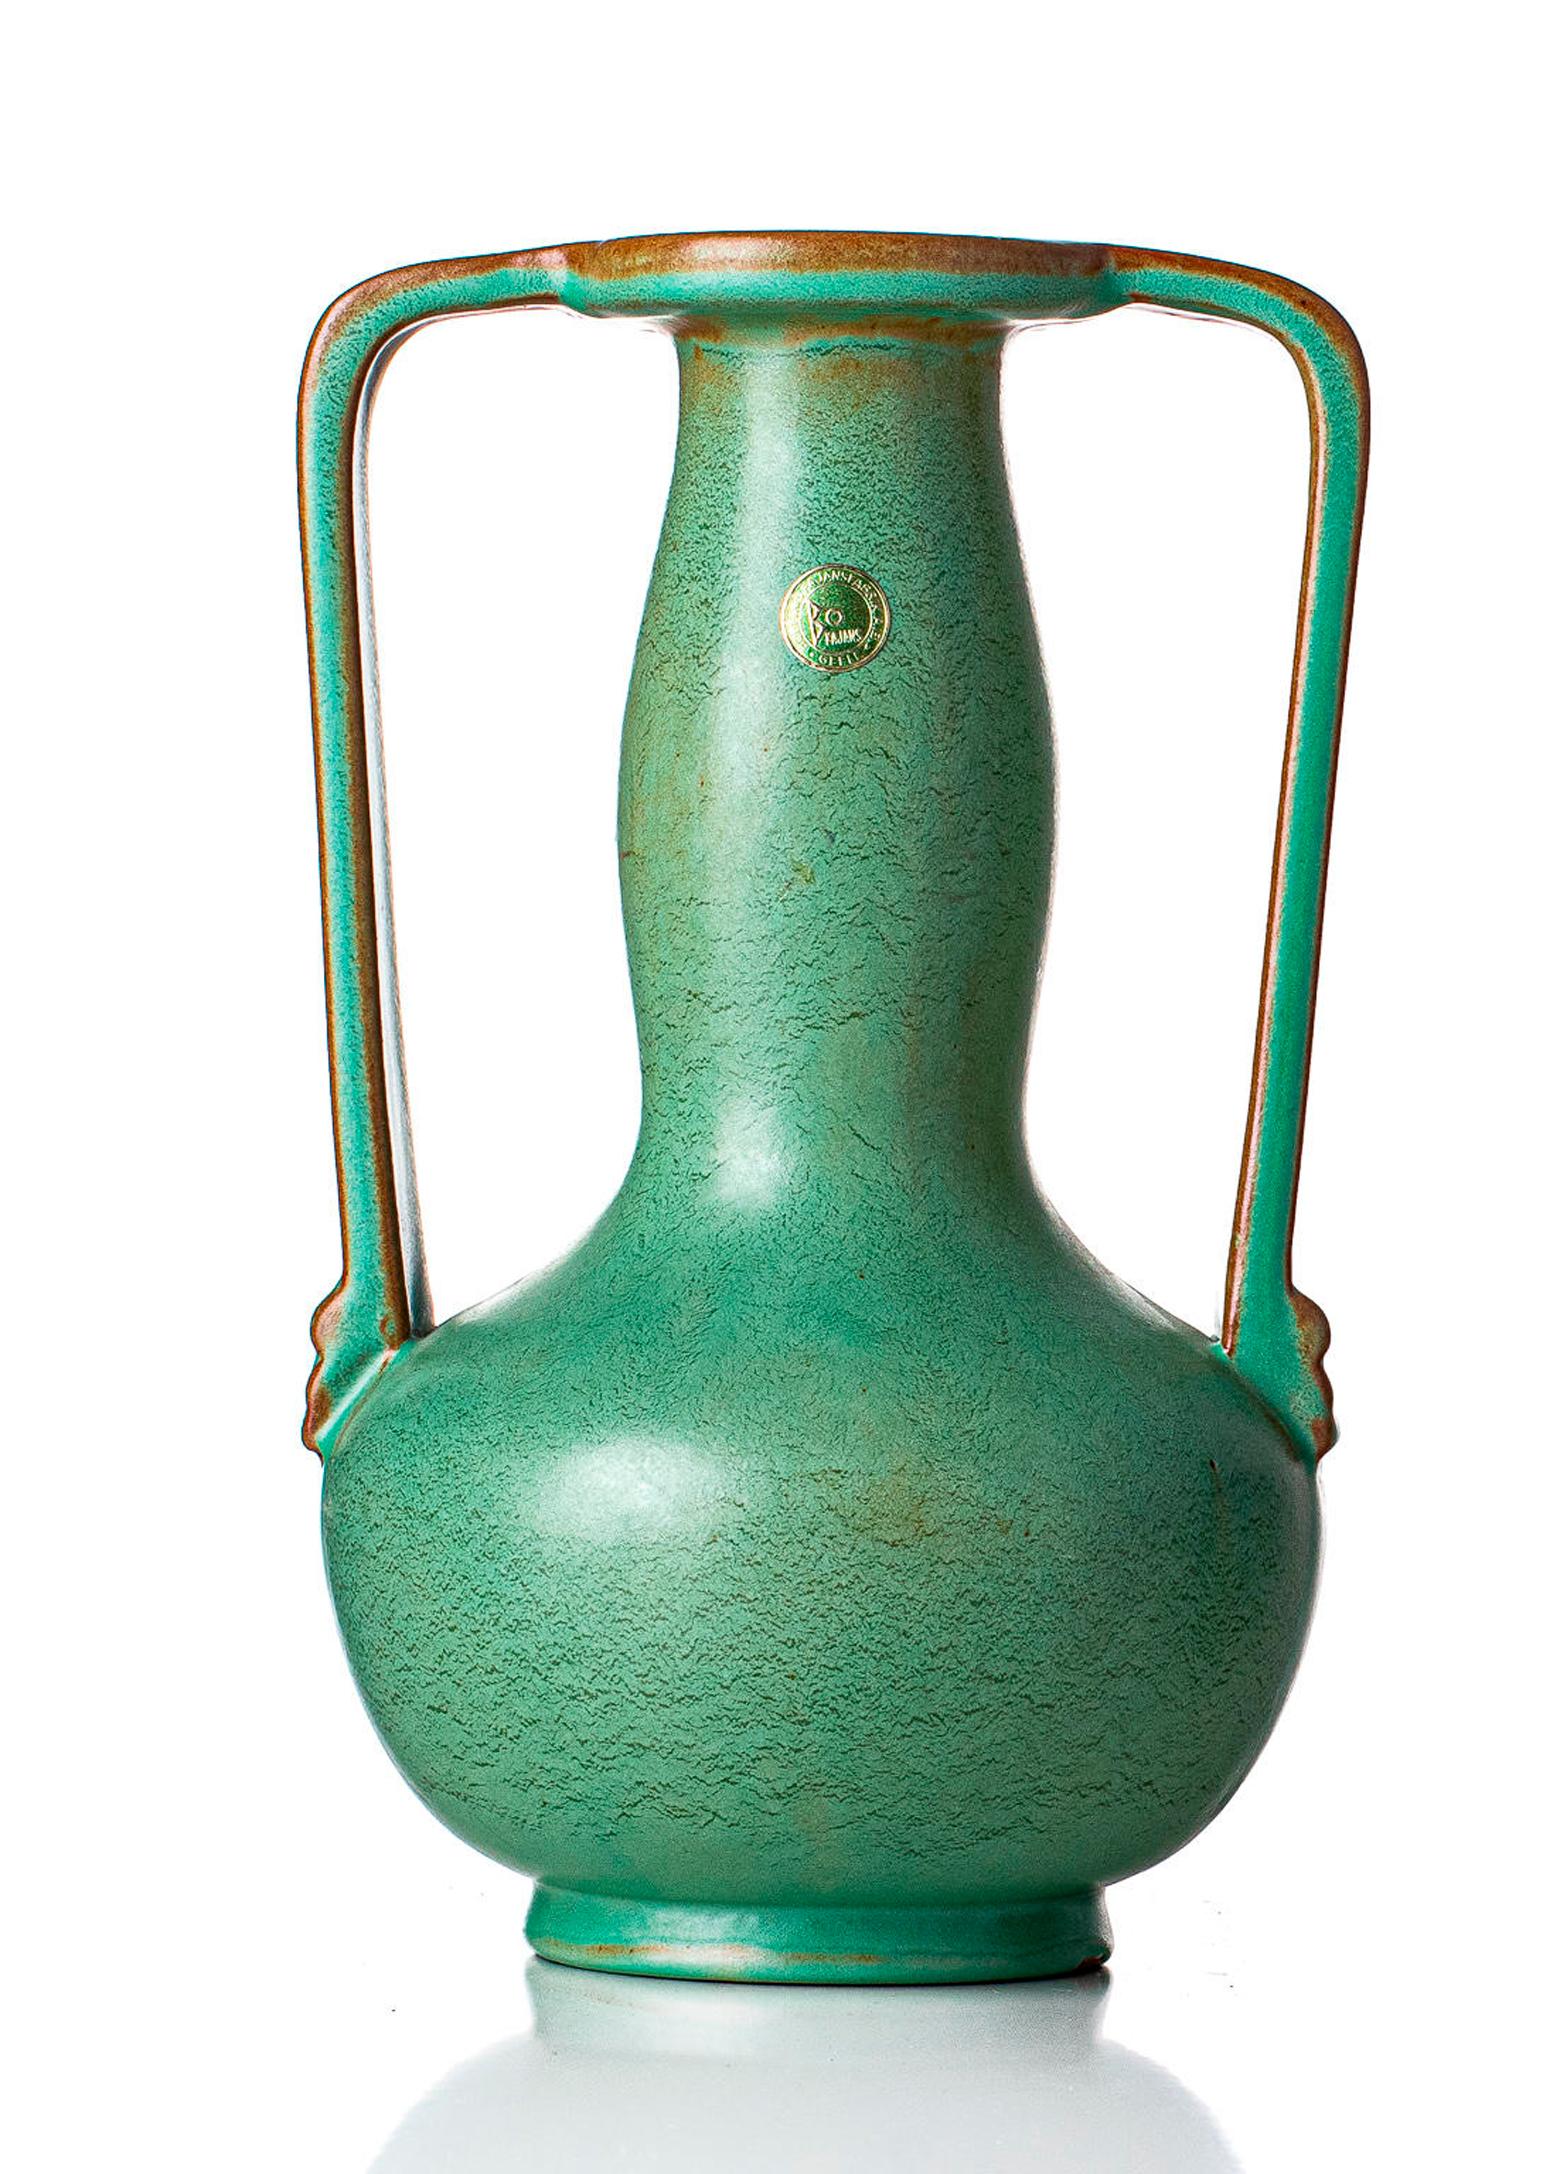 Vase en céramique d'Ewald Dahlskog (1894-1950) produit par Bobergs Fajansfabrik. Marqué M/D242-32. Le numéro se référant à la couleur ; Céladon. Les deux marques à la base sont issues du processus de fabrication.